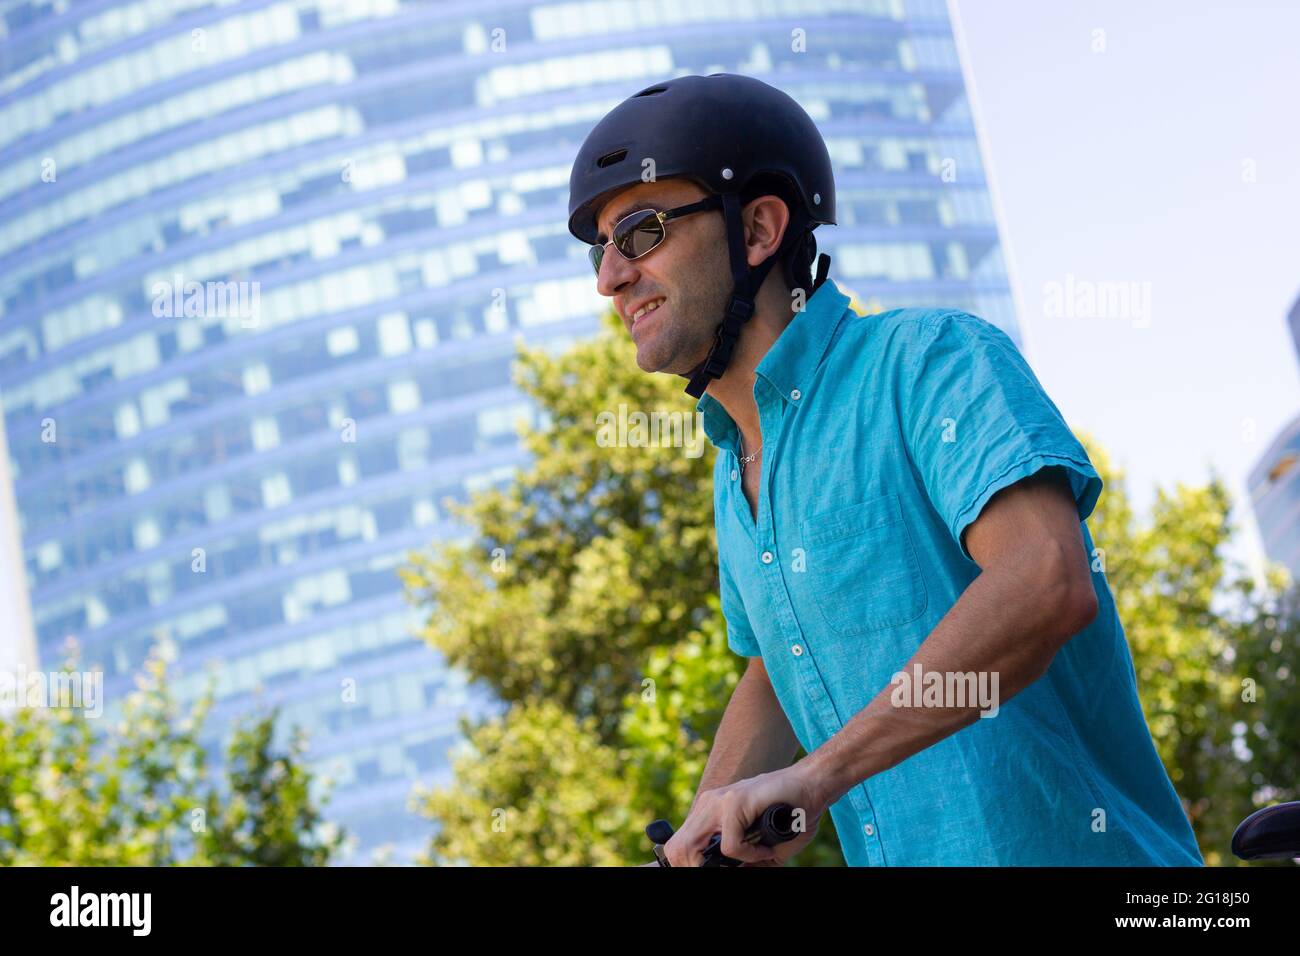 Lächelnder Mann mit Helm, der am sonnigen Tag in der Stadt Fahrrad fährt. Alternative Pendelanfahrtsmöglichkeit im Uban-Bereich mit Skyline im Hintergrund Stockfoto